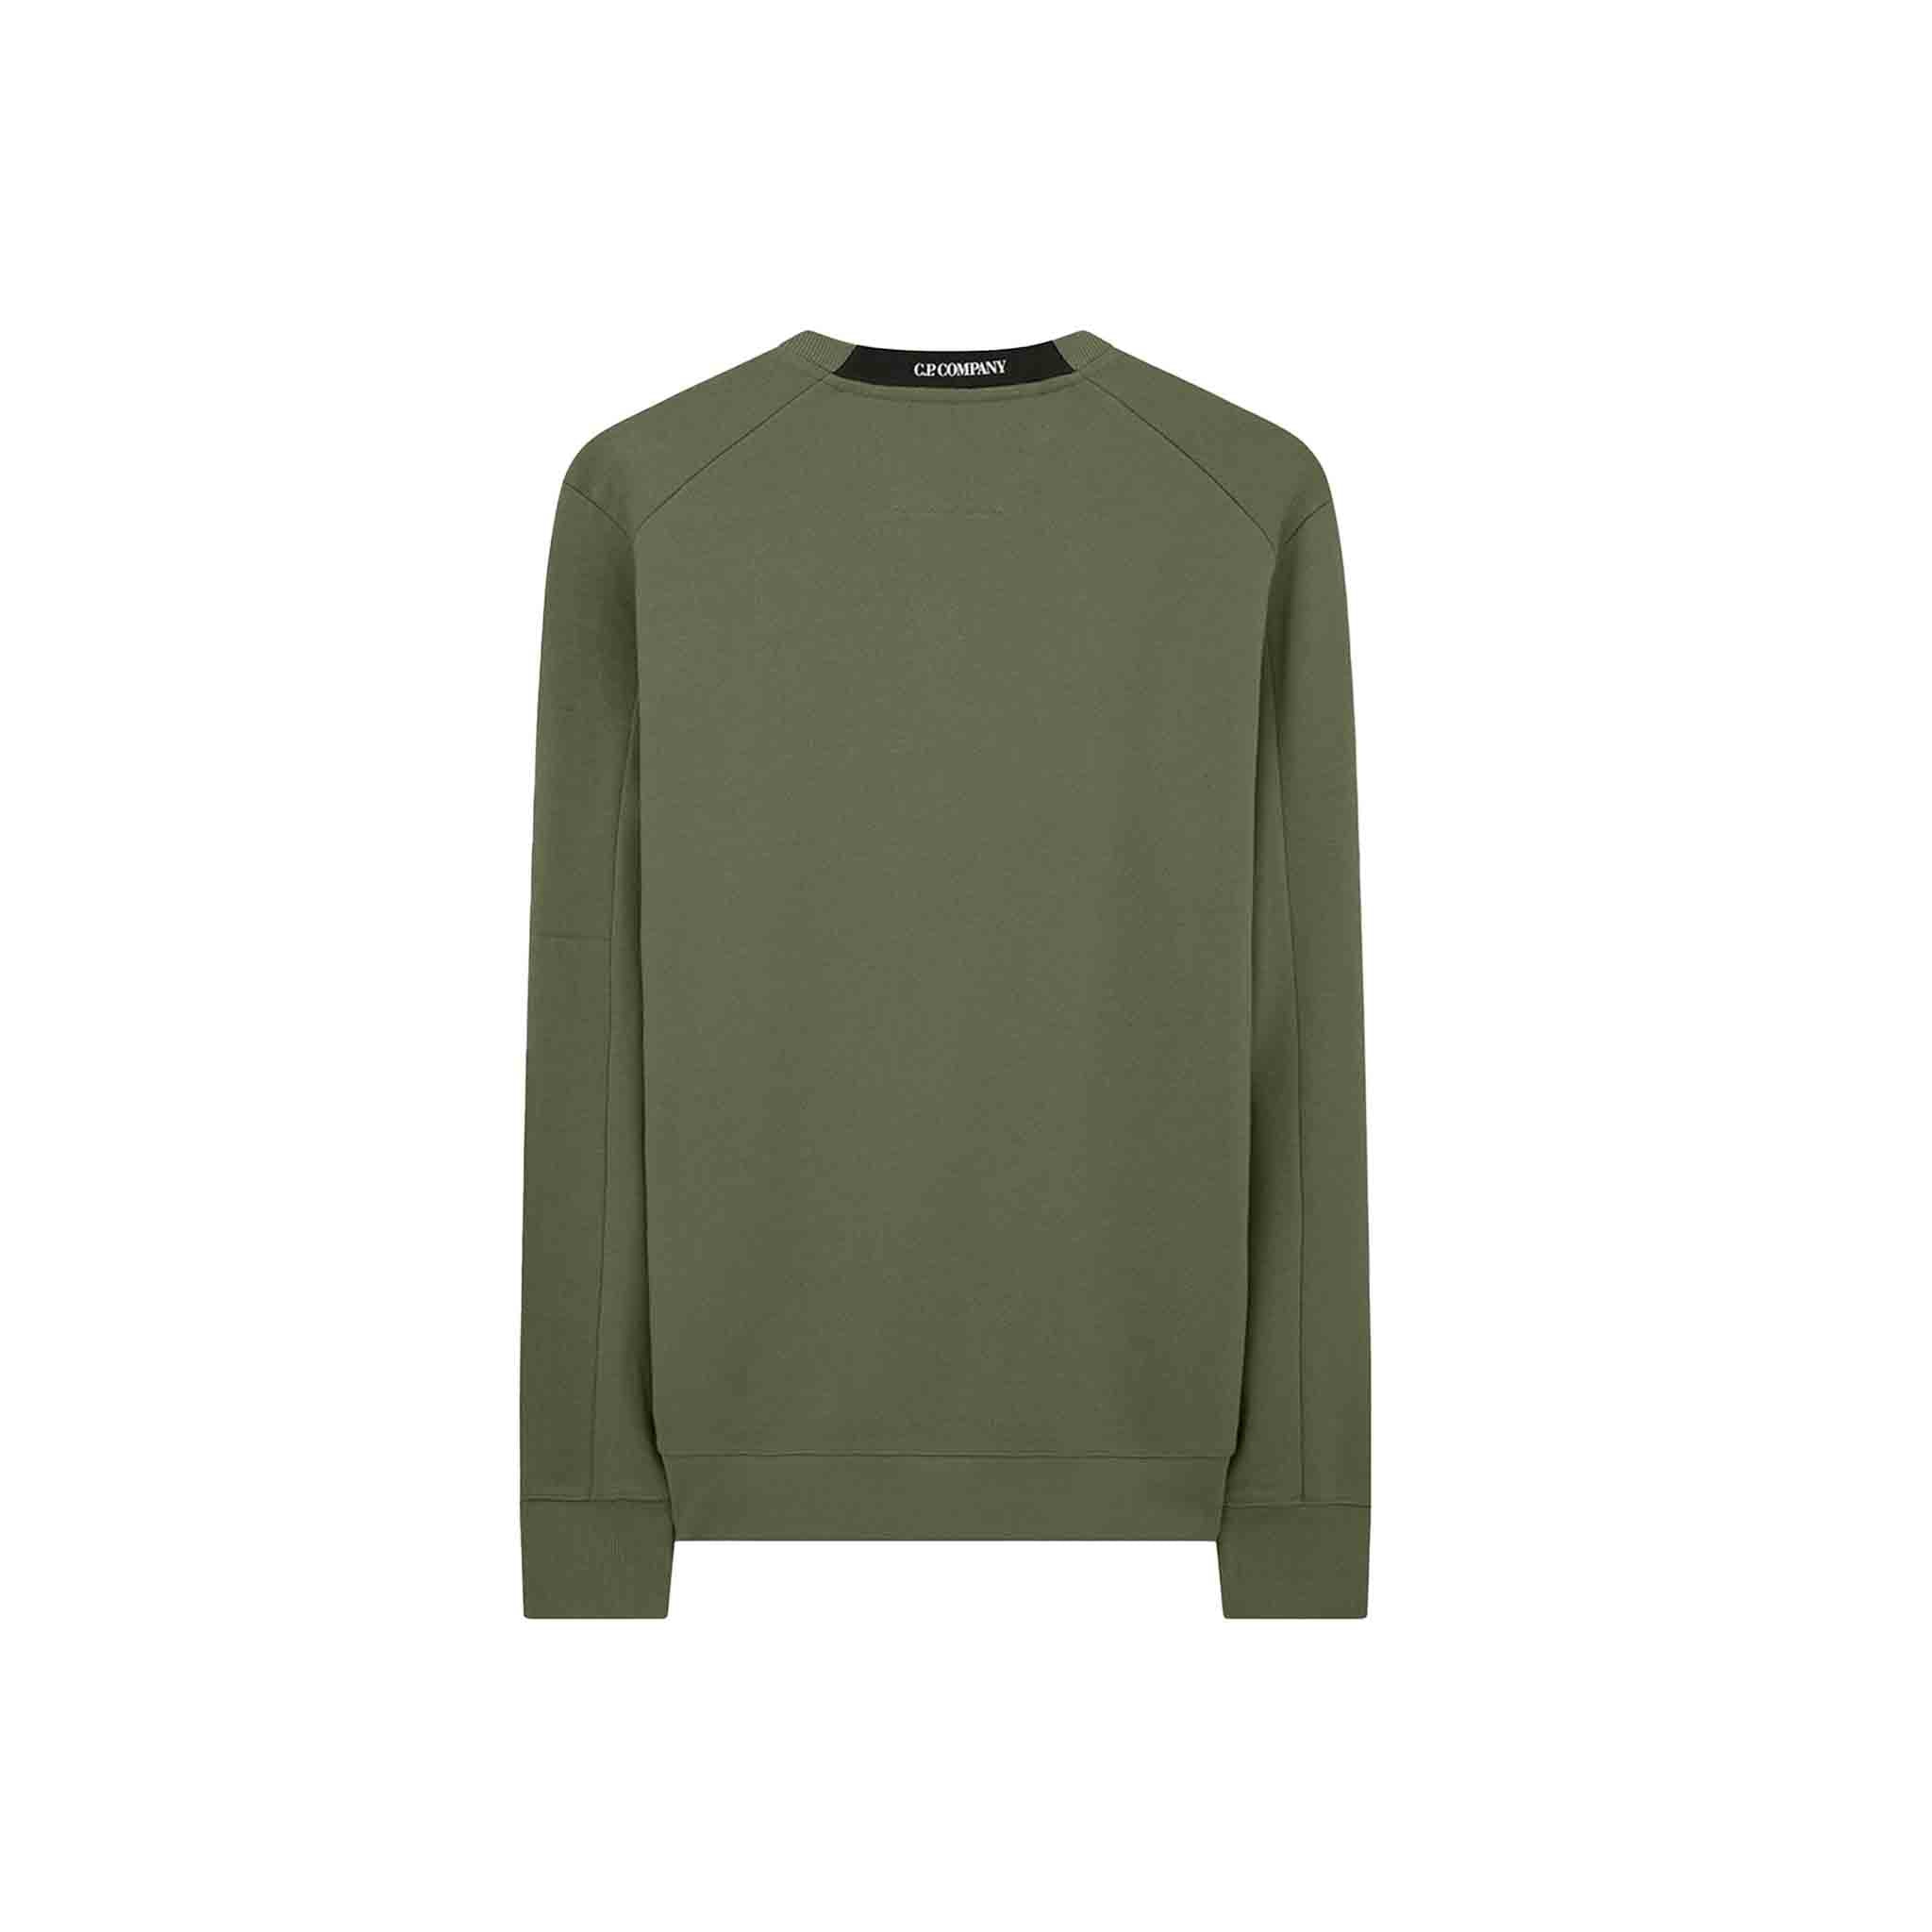 C.P. Company Diagonal Raised Fleece Sweatshirt in Bronze Green